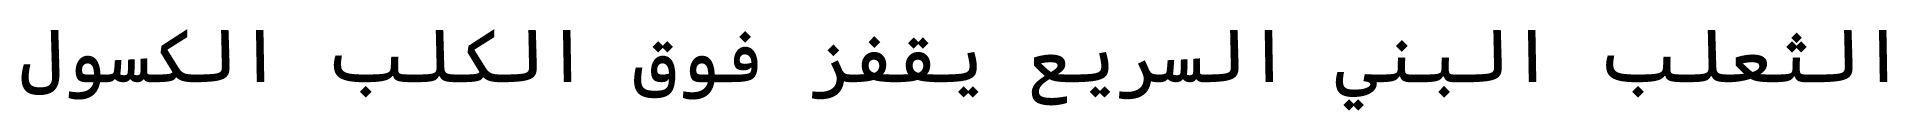 Código Cascadia da imagem árabe